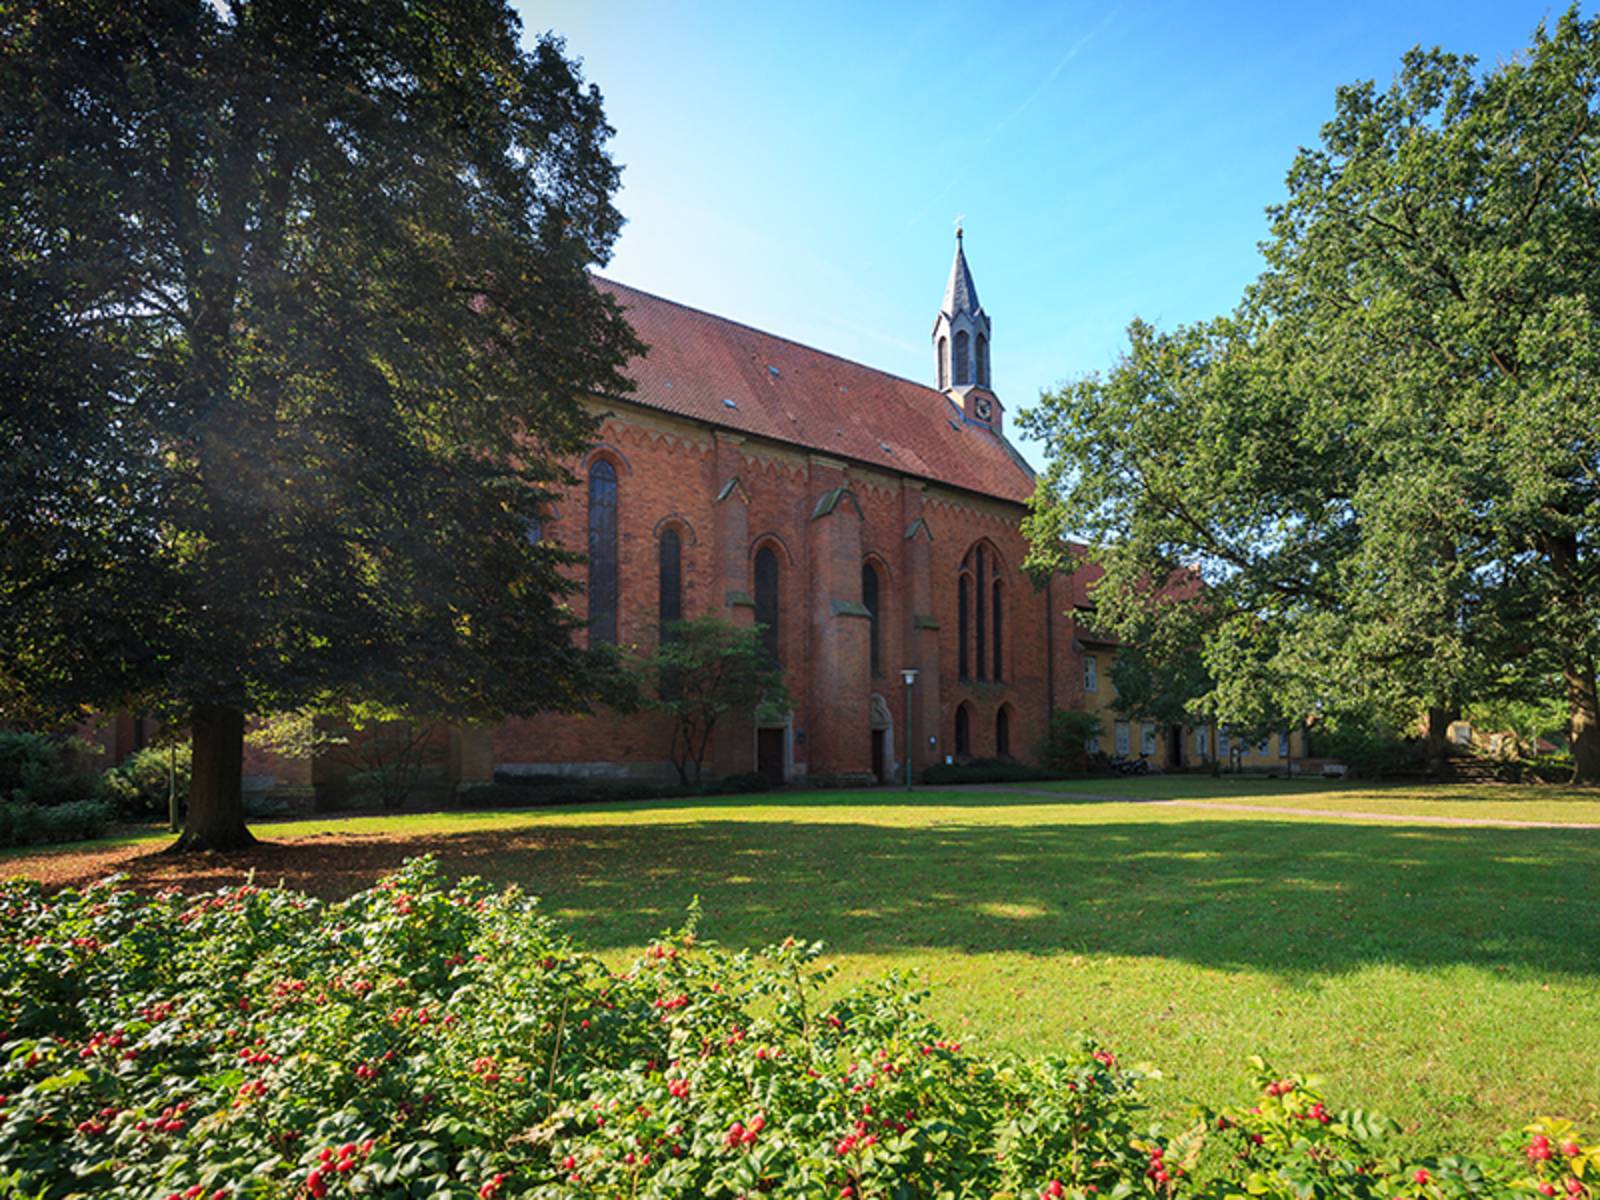 Kloster Mariensee: Evangelisches Frauenkloster in Mariensee, einem Ortsteil von Neustadt am Rübenberge